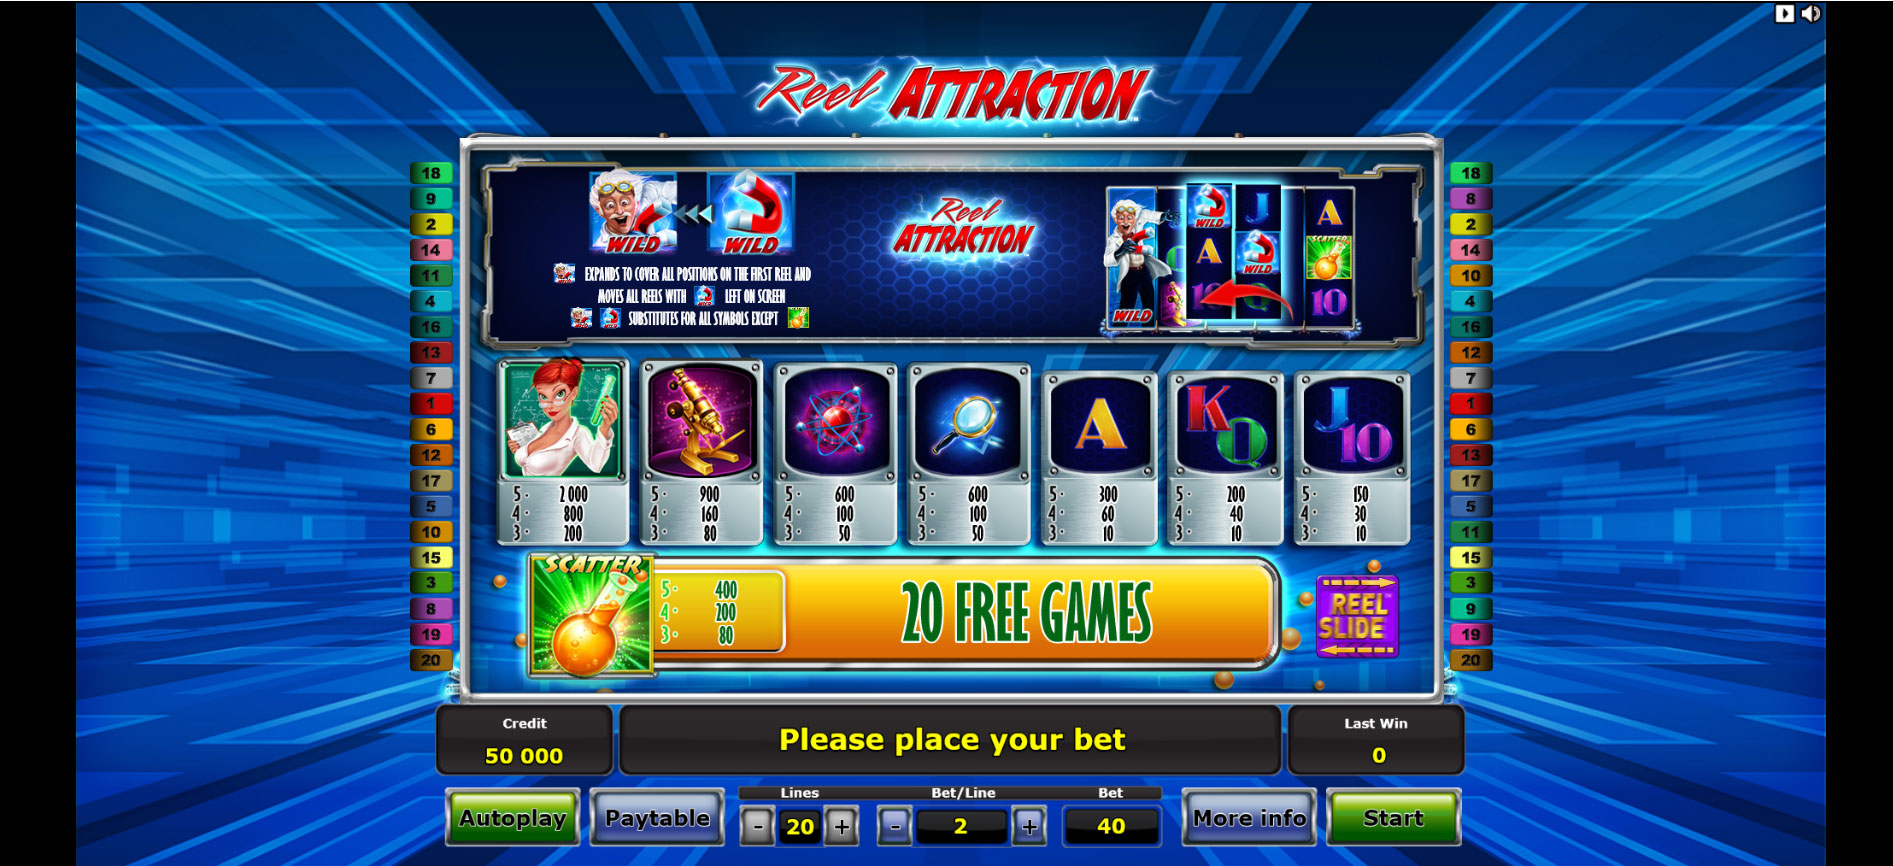 tabella dei pagamenti della slot machine Reel Attraction